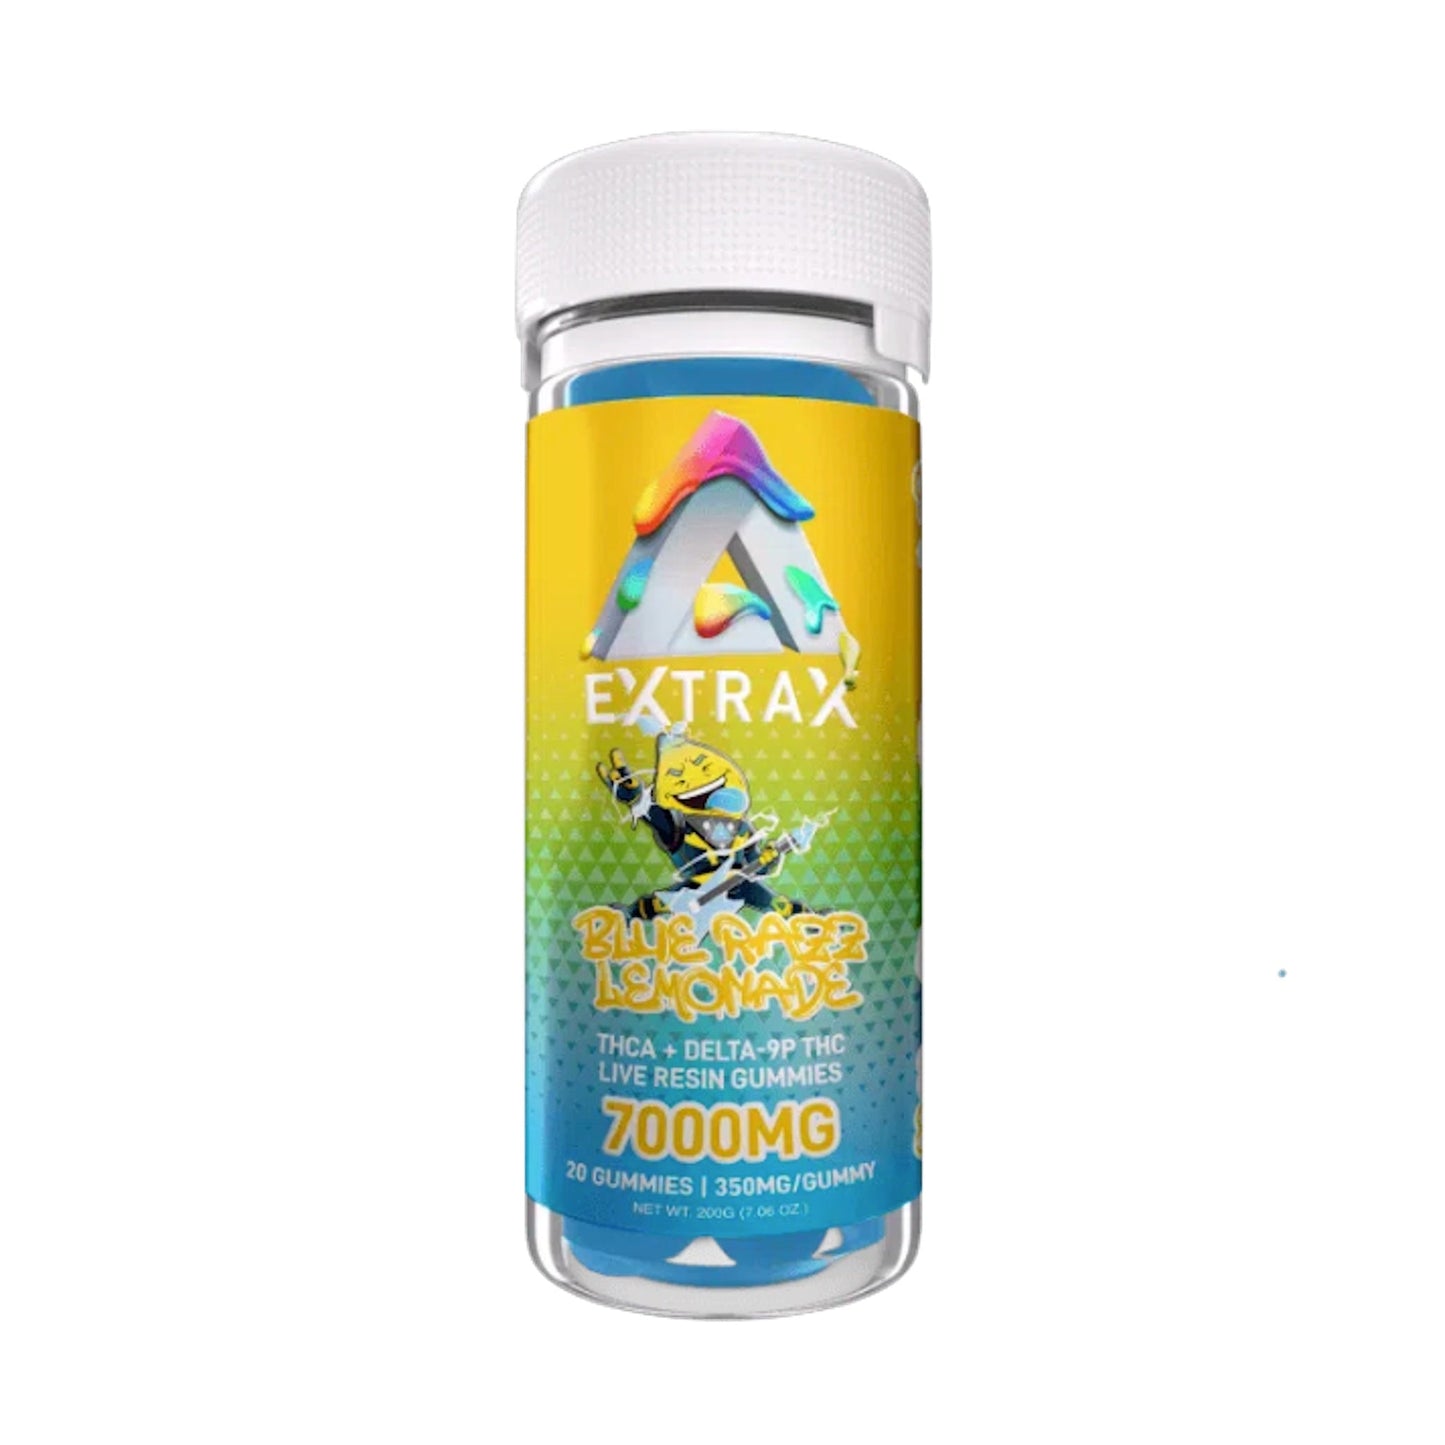 Extrax Adios THC-A Gummies - 7000mg Blue Razz Lemonade